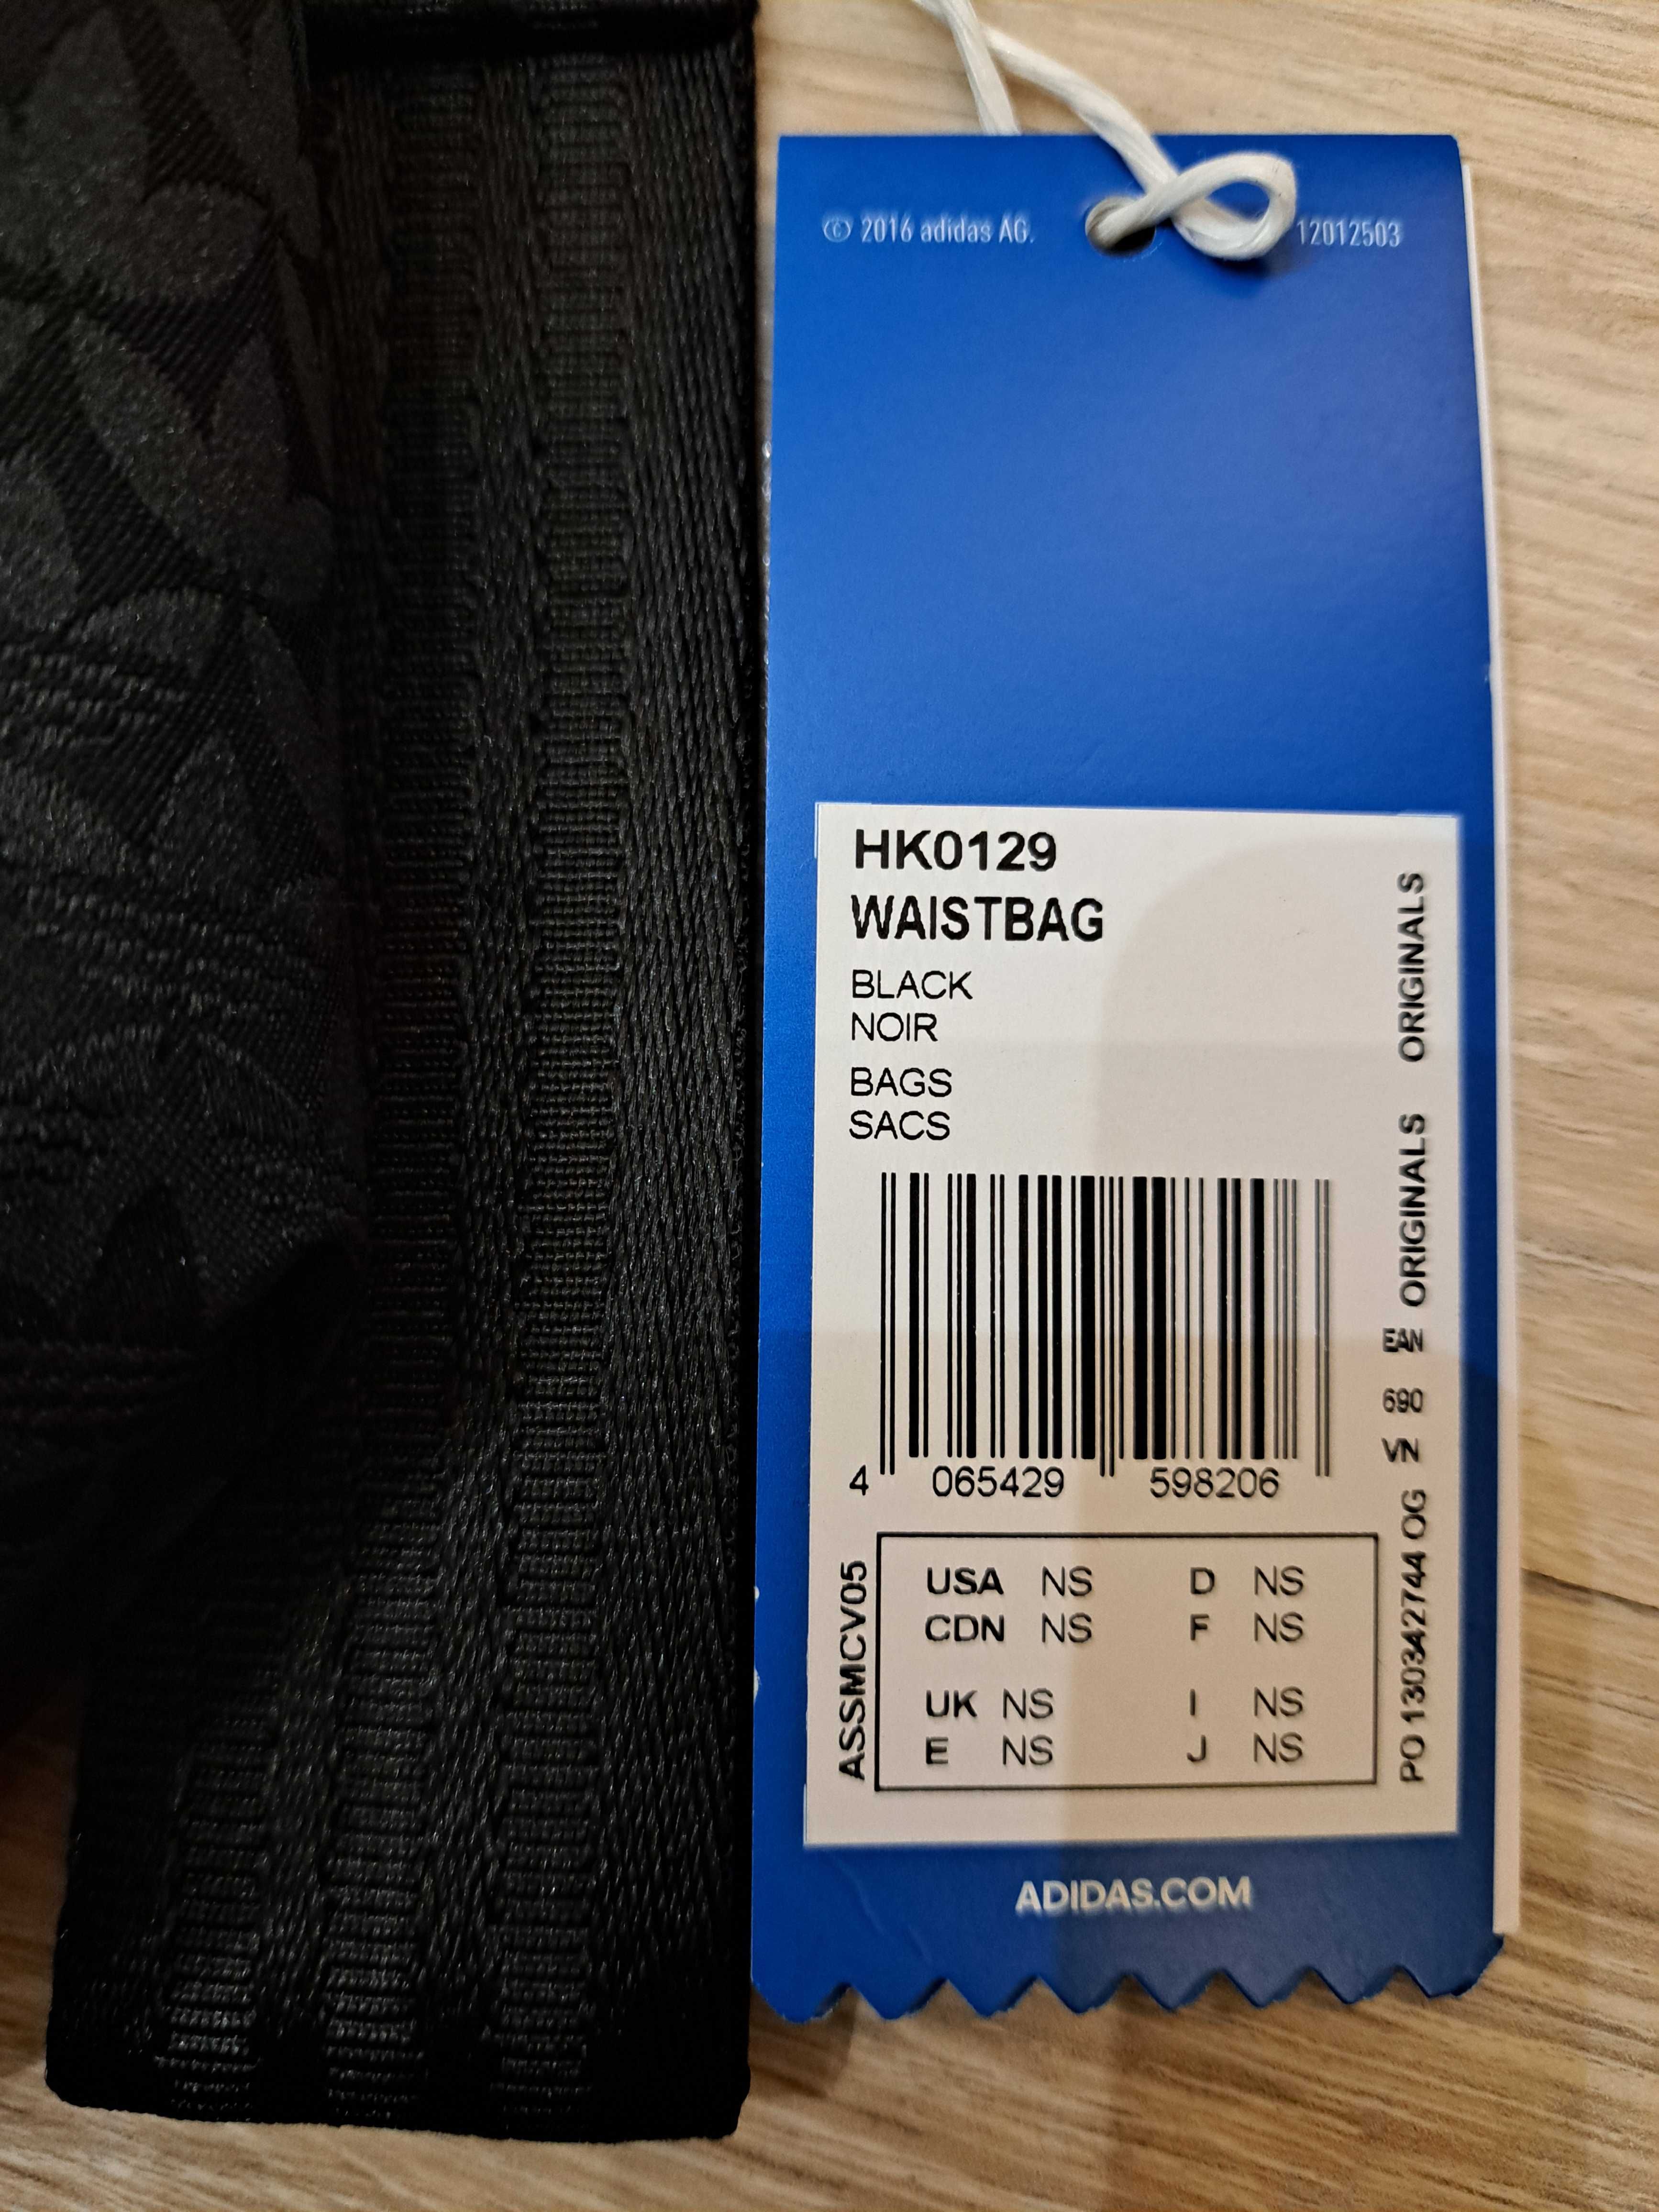 Torba, nerka Adidas Waistbag HK0129, czarna, NOWA Z METKĄ